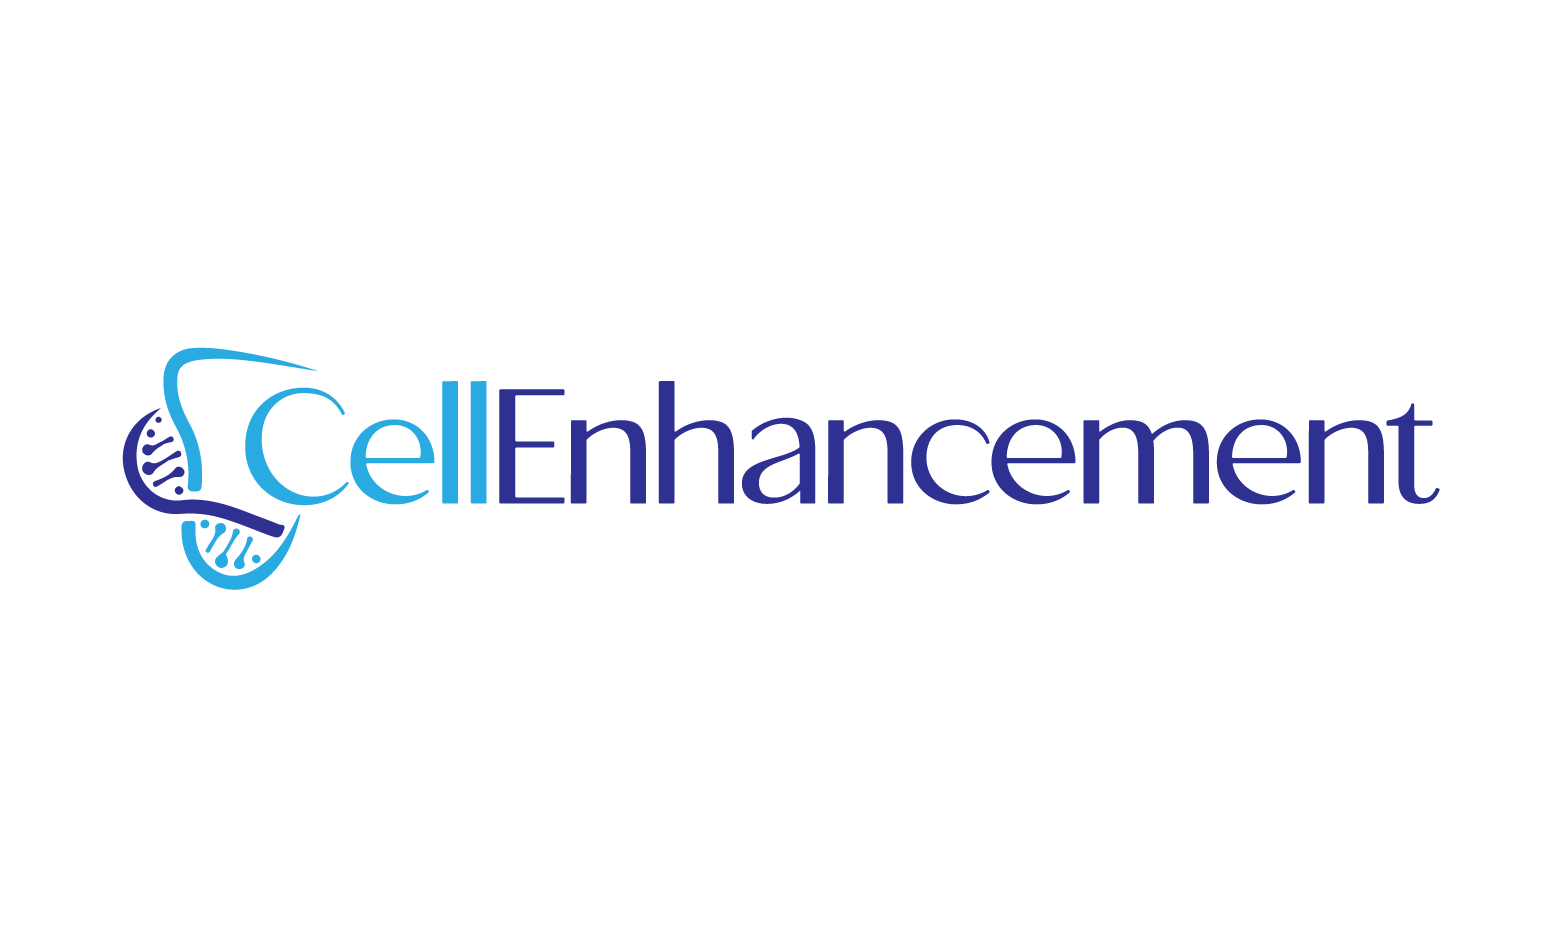 CellEnhancement.com - Creative brandable domain for sale